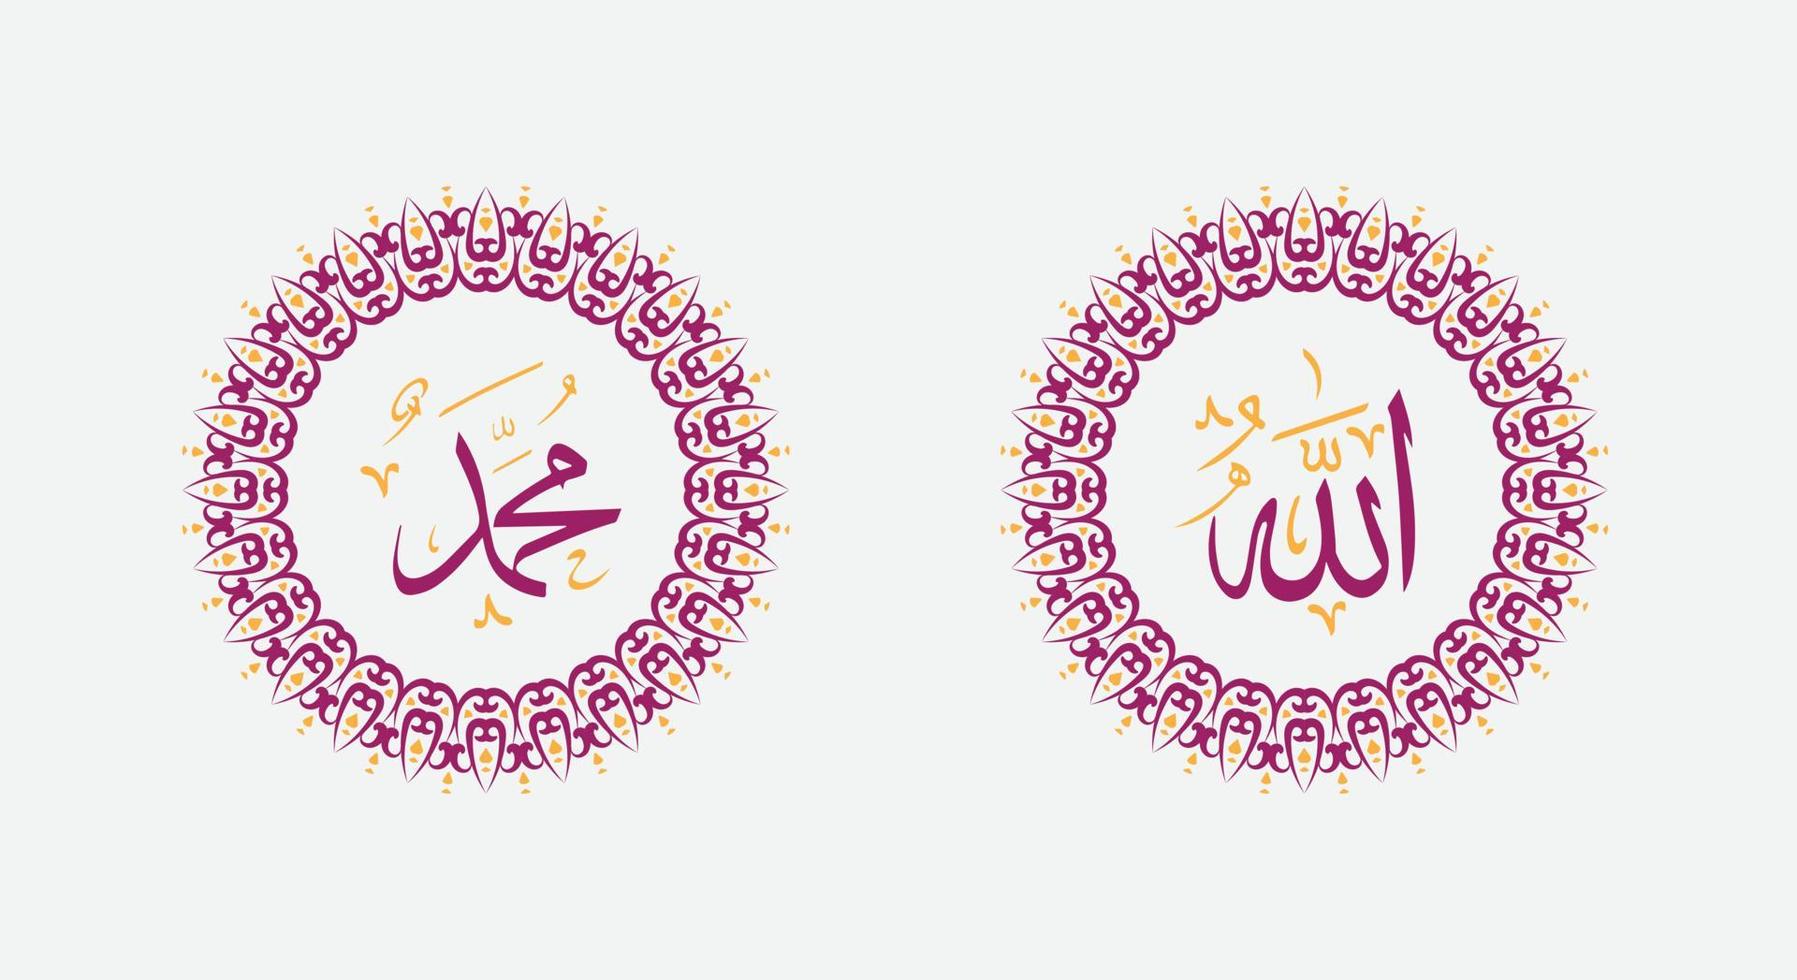 allah muhammad namn av allah muhammed, allah muhammad arabicum islamic kalligrafi konst, med traditionell ram och modern Färg vektor